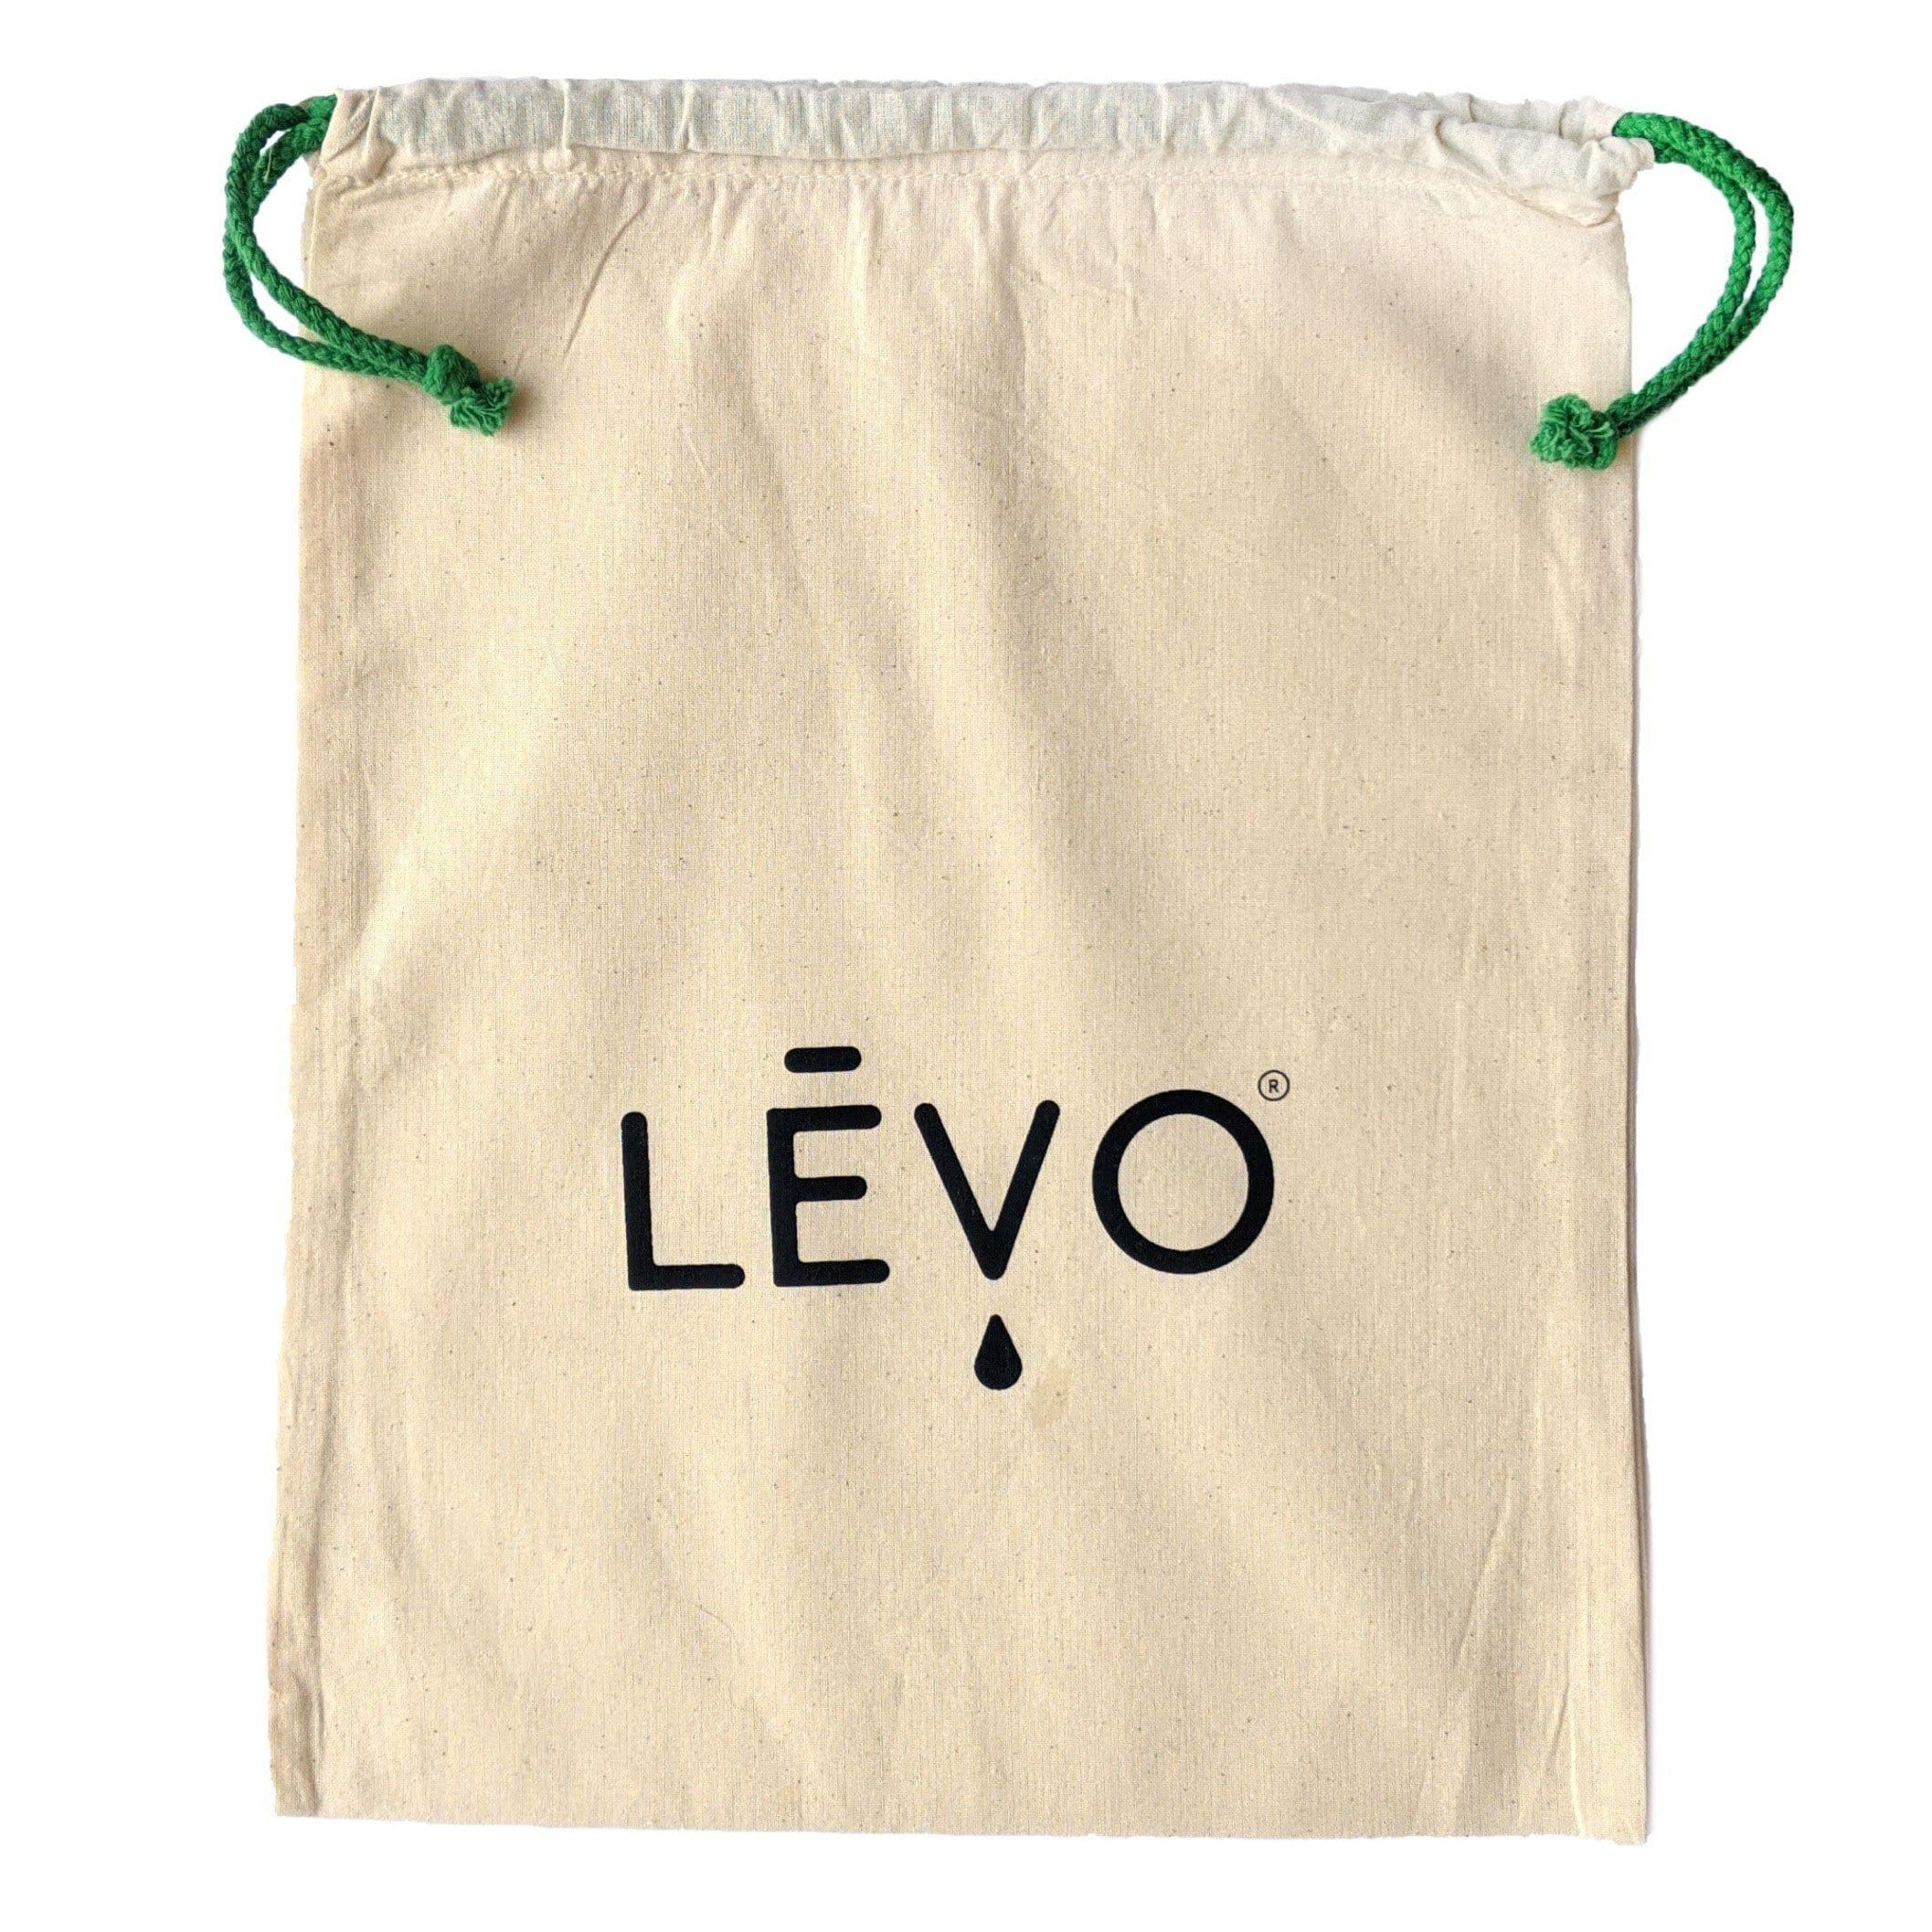 LEVO drawstring bag open